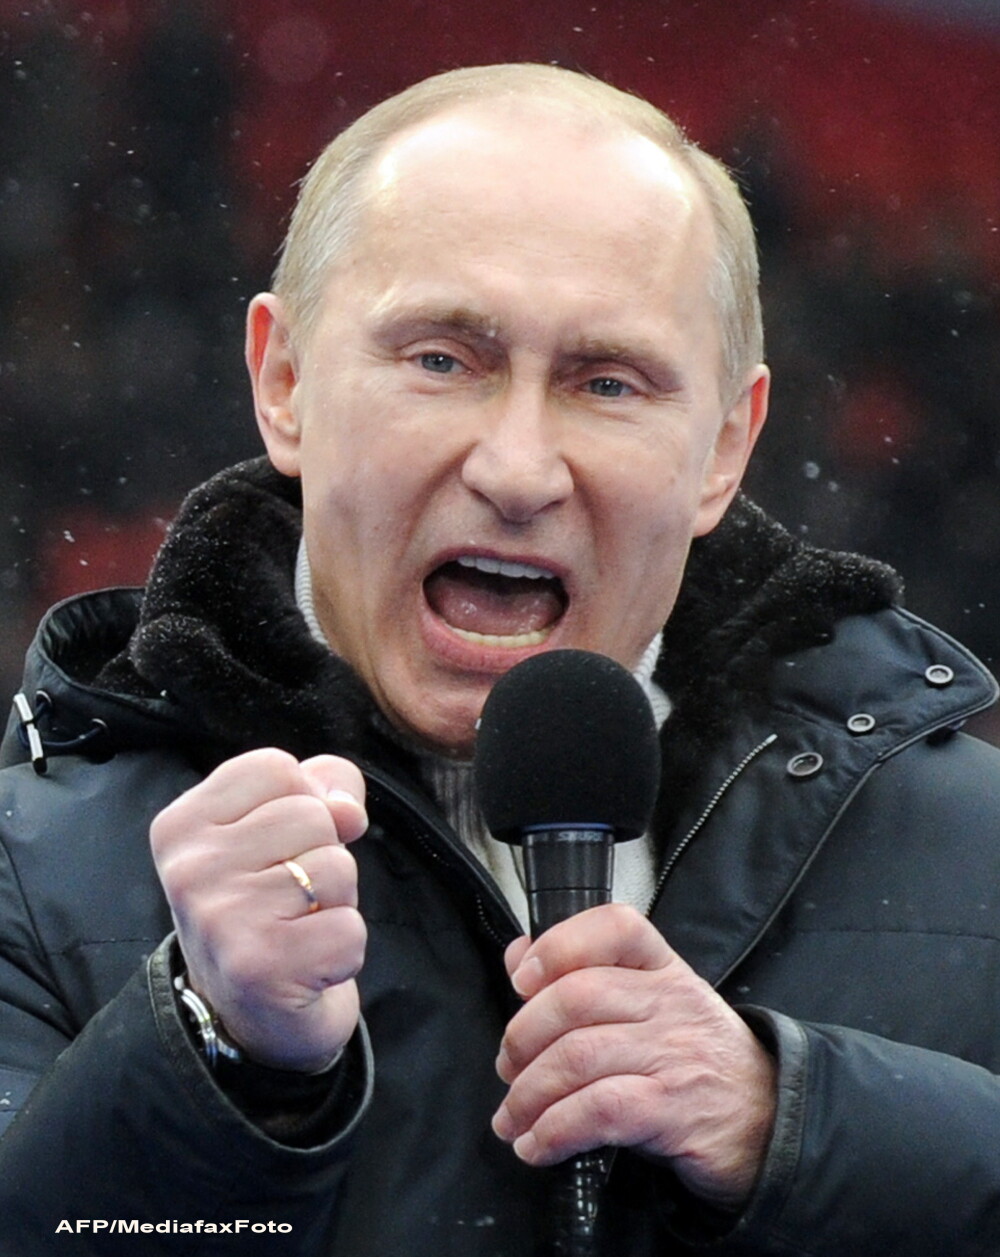 Sky News: Mii de functionari publici din Rusia vor primi bani sa-l voteze de mai multe ori pe Putin - Imaginea 3